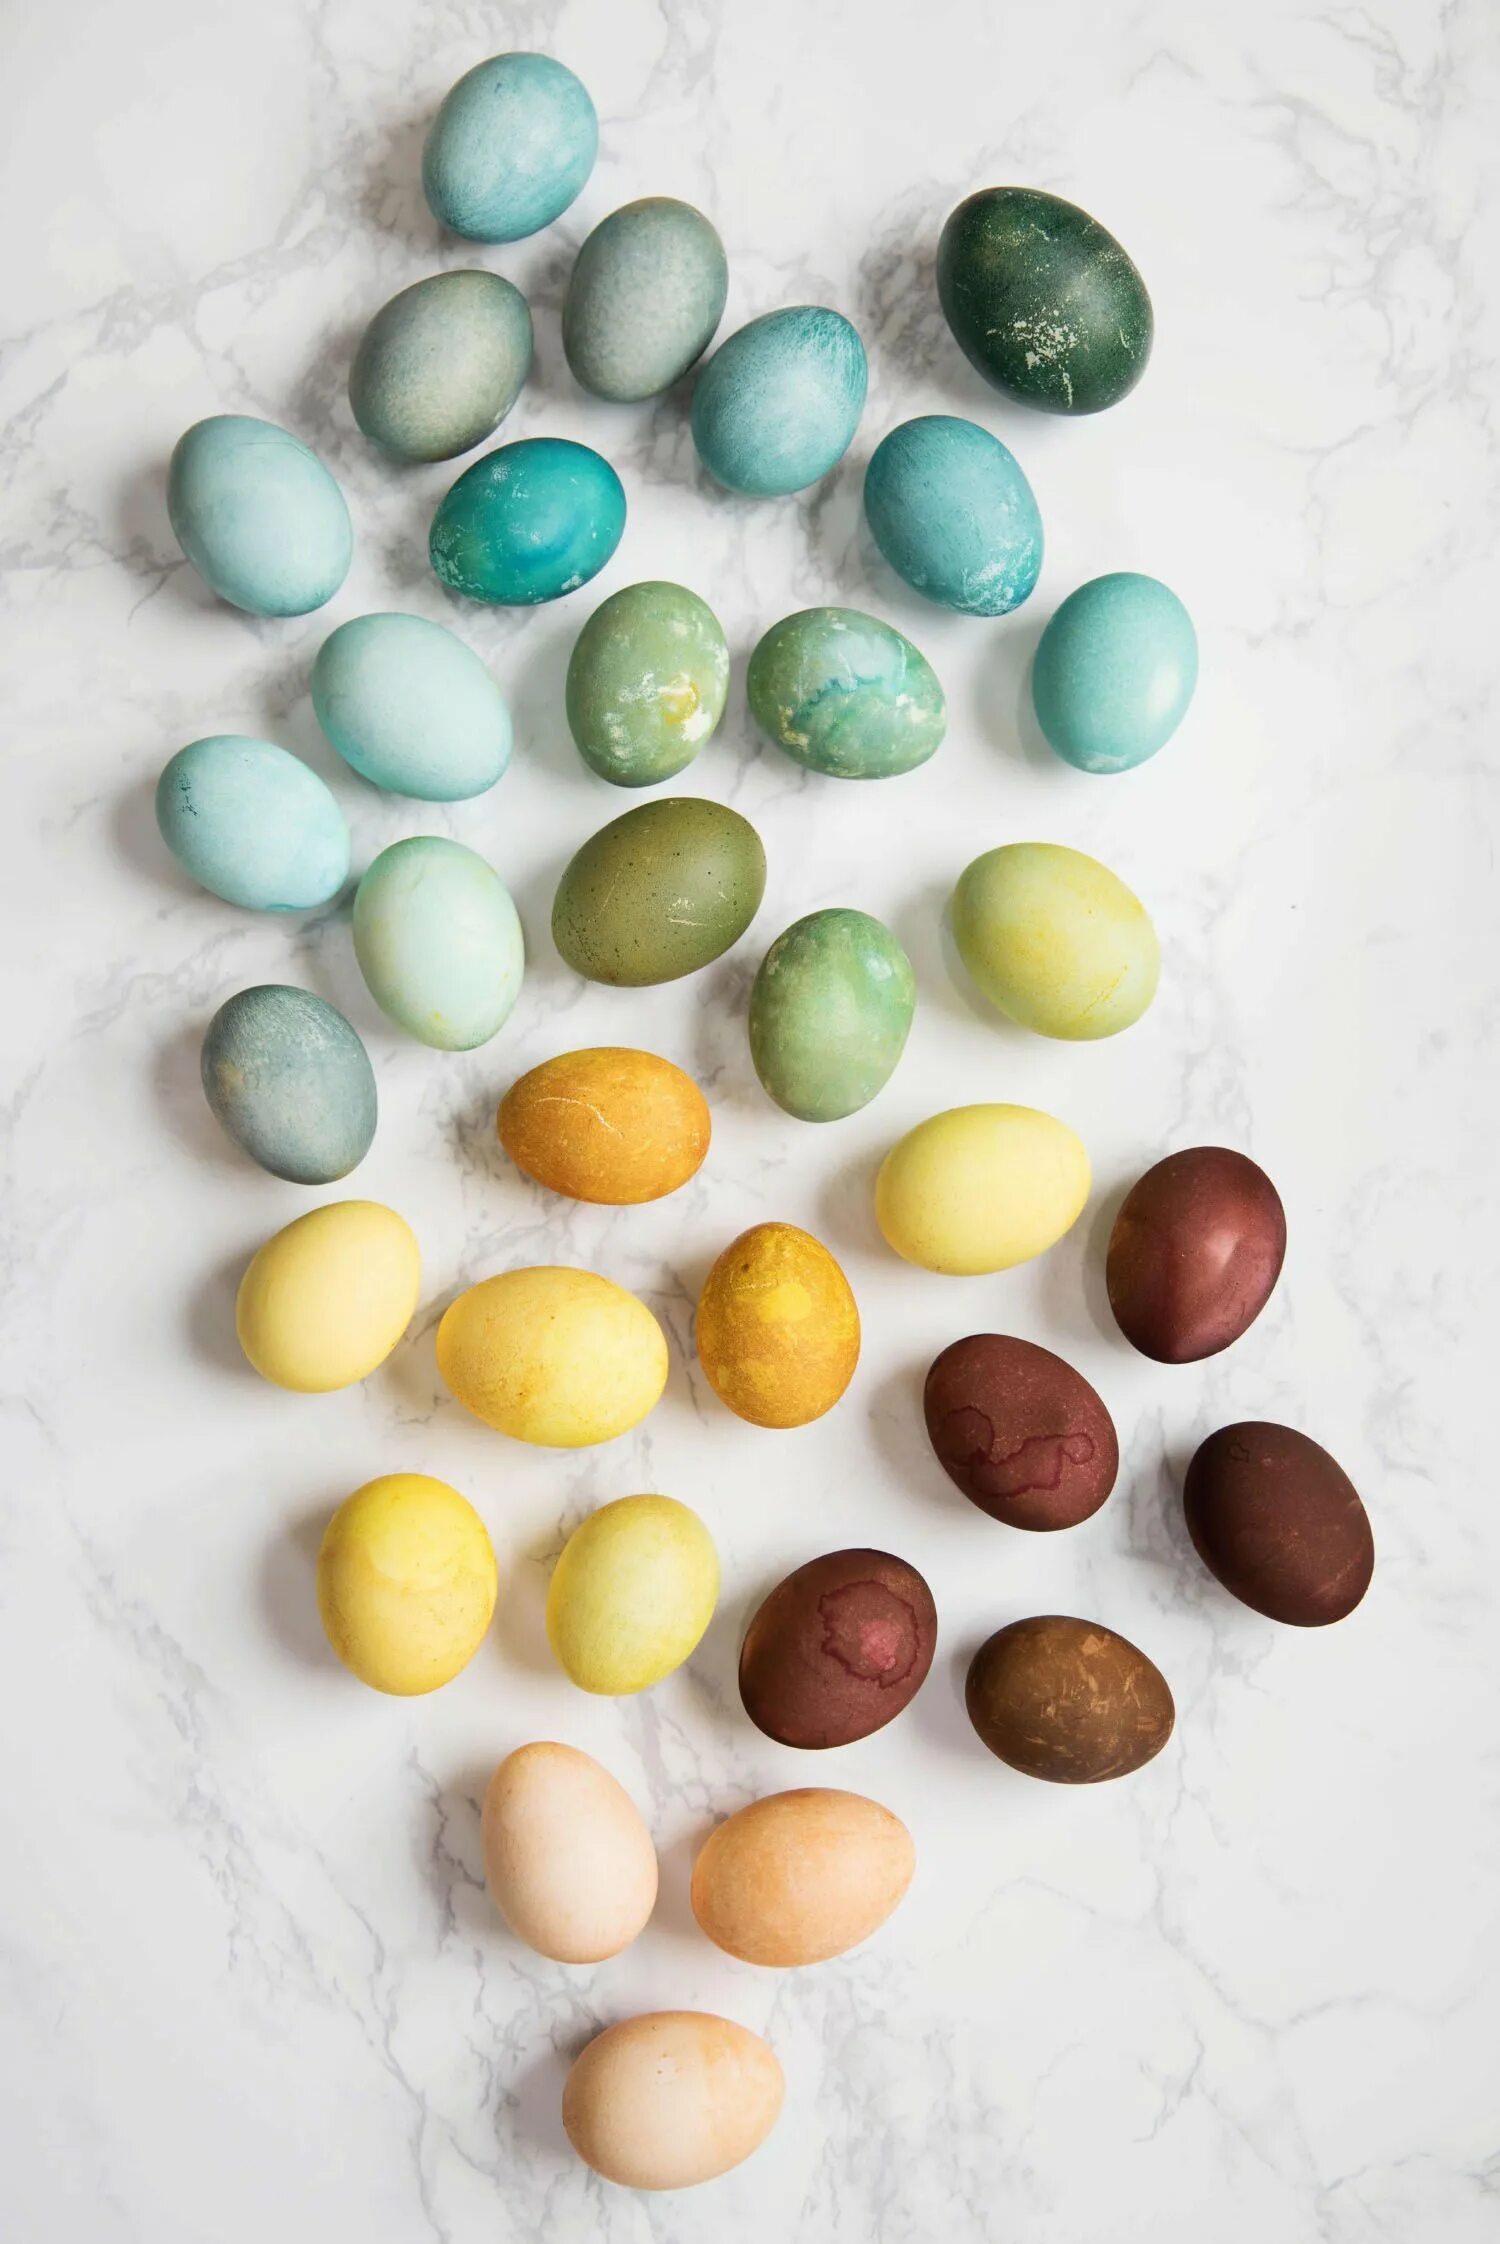 Окрашивание яиц натуральными красителями. Натуральные красители для яиц. Украшение яиц натуральными красителями. Пасхальные яйца натуральные красители.